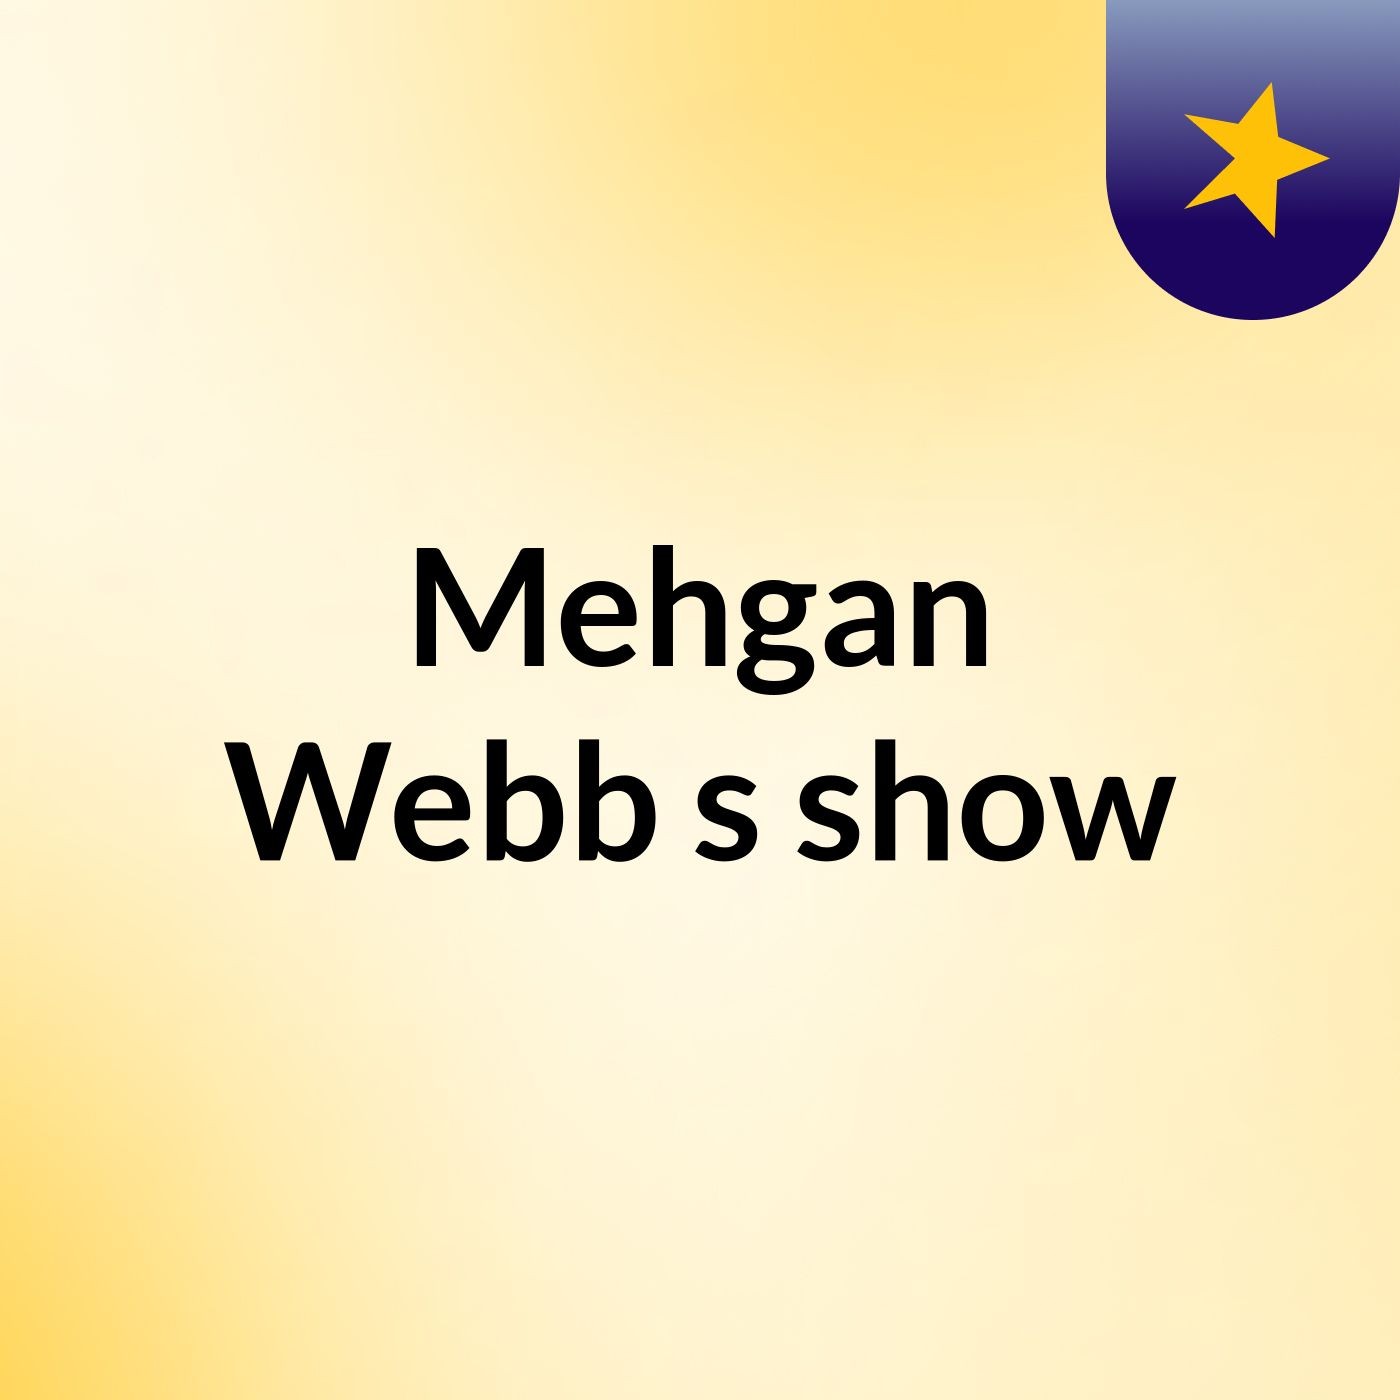 Mehgan Webb's show